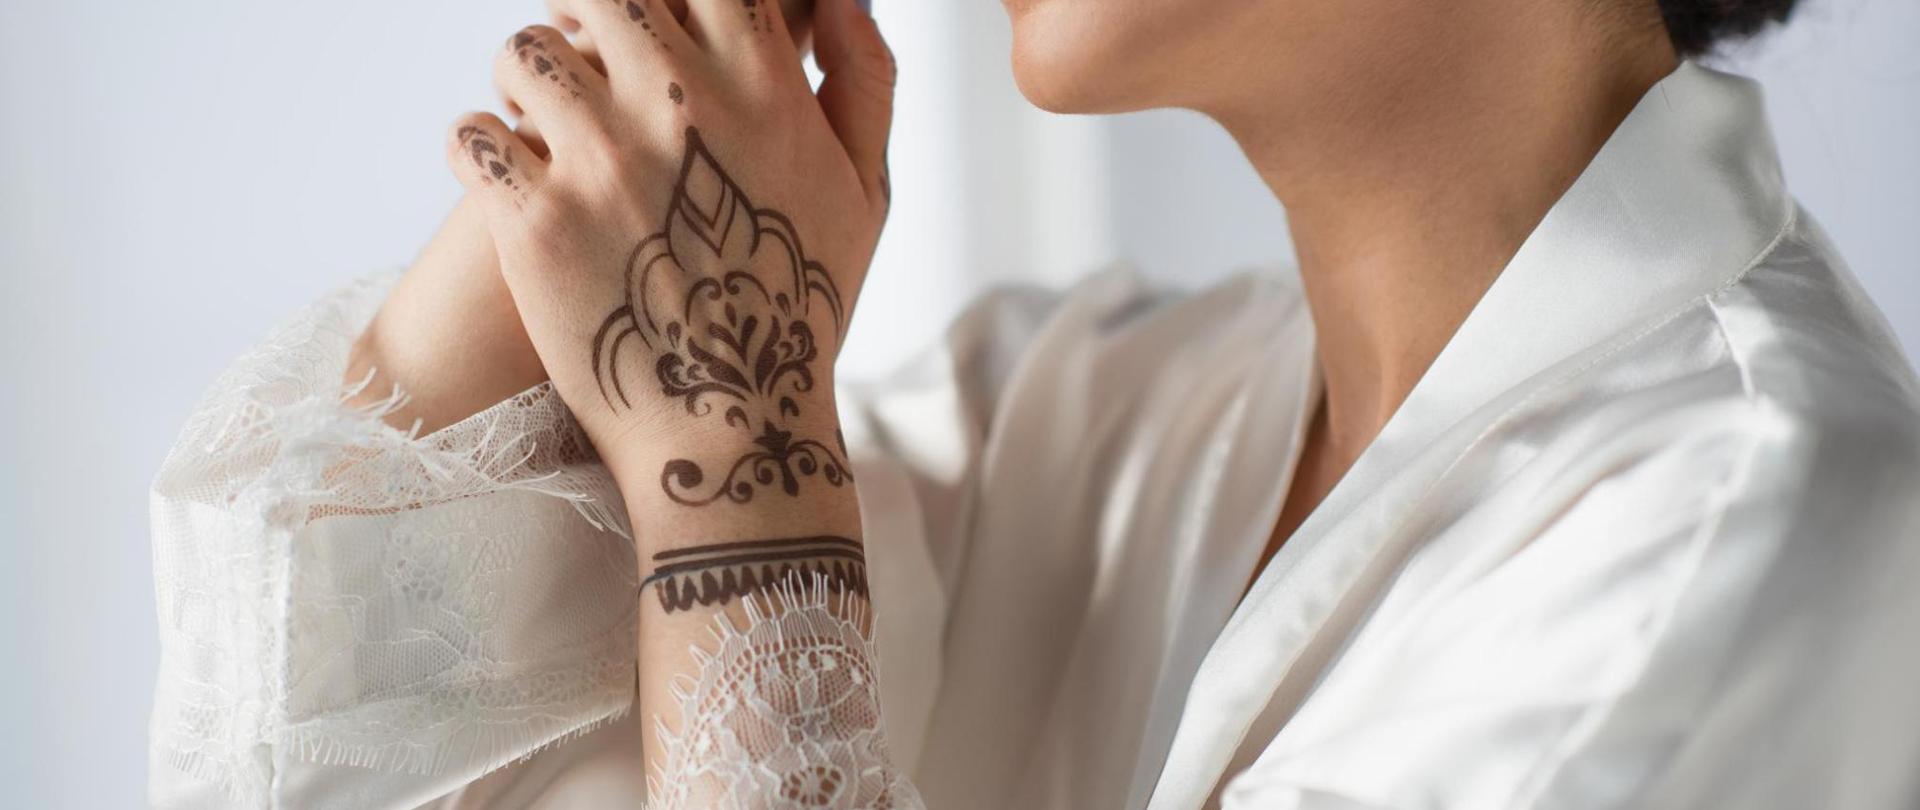 Na zdjęciu jest kobieta. W centrum uwagi jest jej dłoń z widocznym tatuażem z henny.